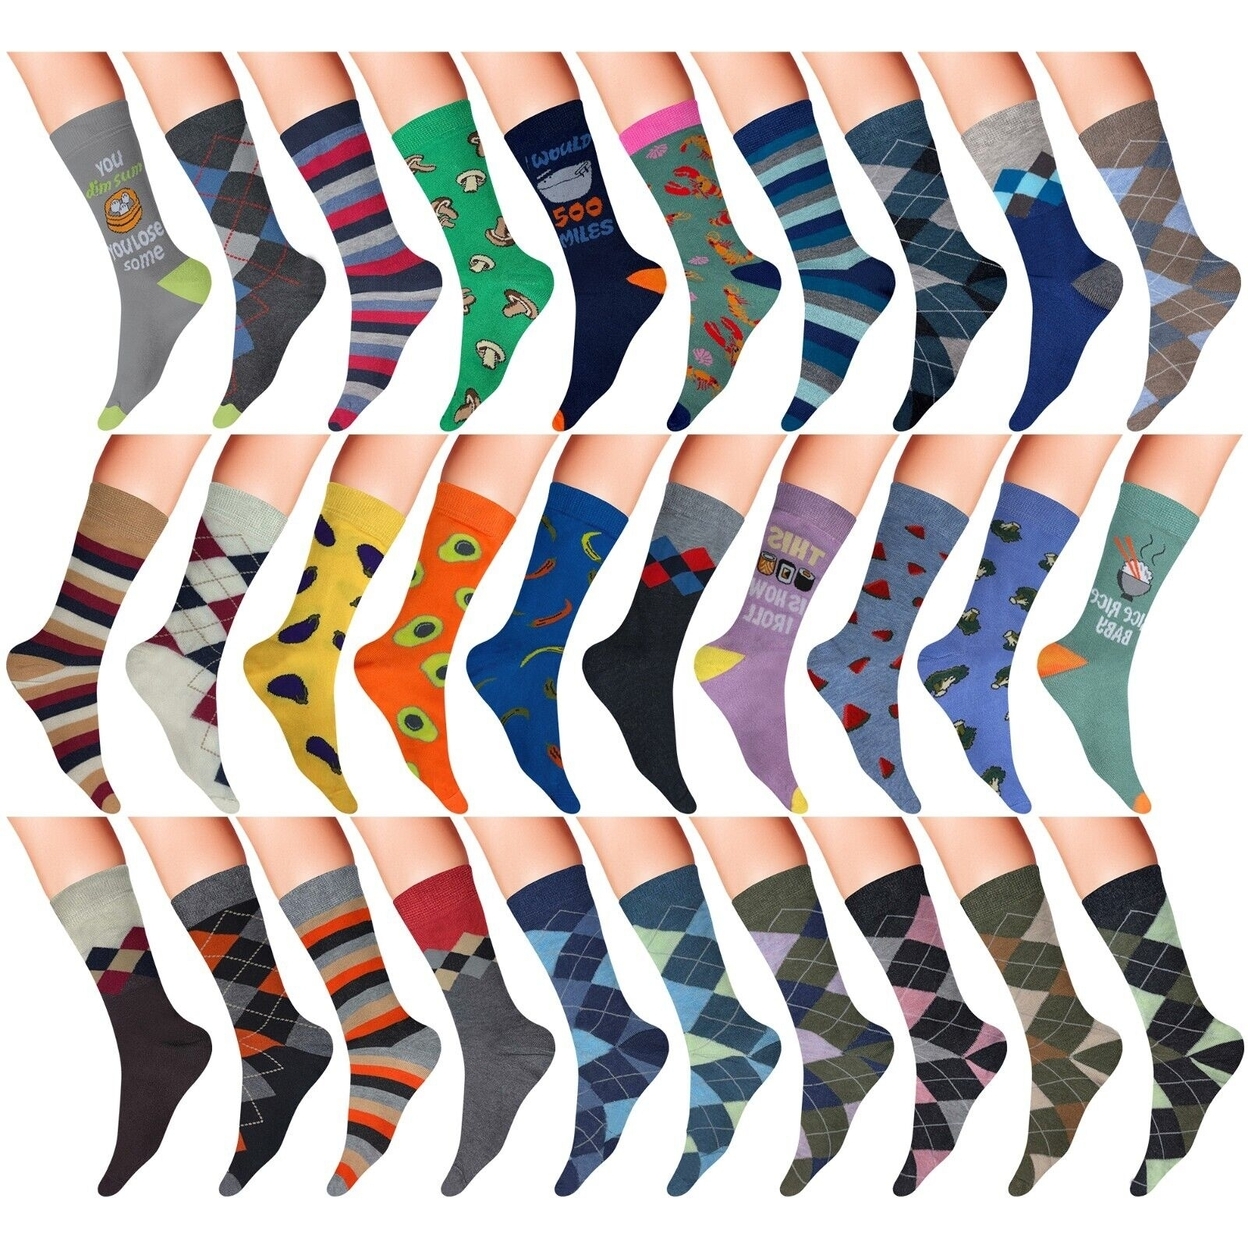 12-Pairs: Men's James Fiallo Premium Quality Fun Printed Dress Socks - Argyle